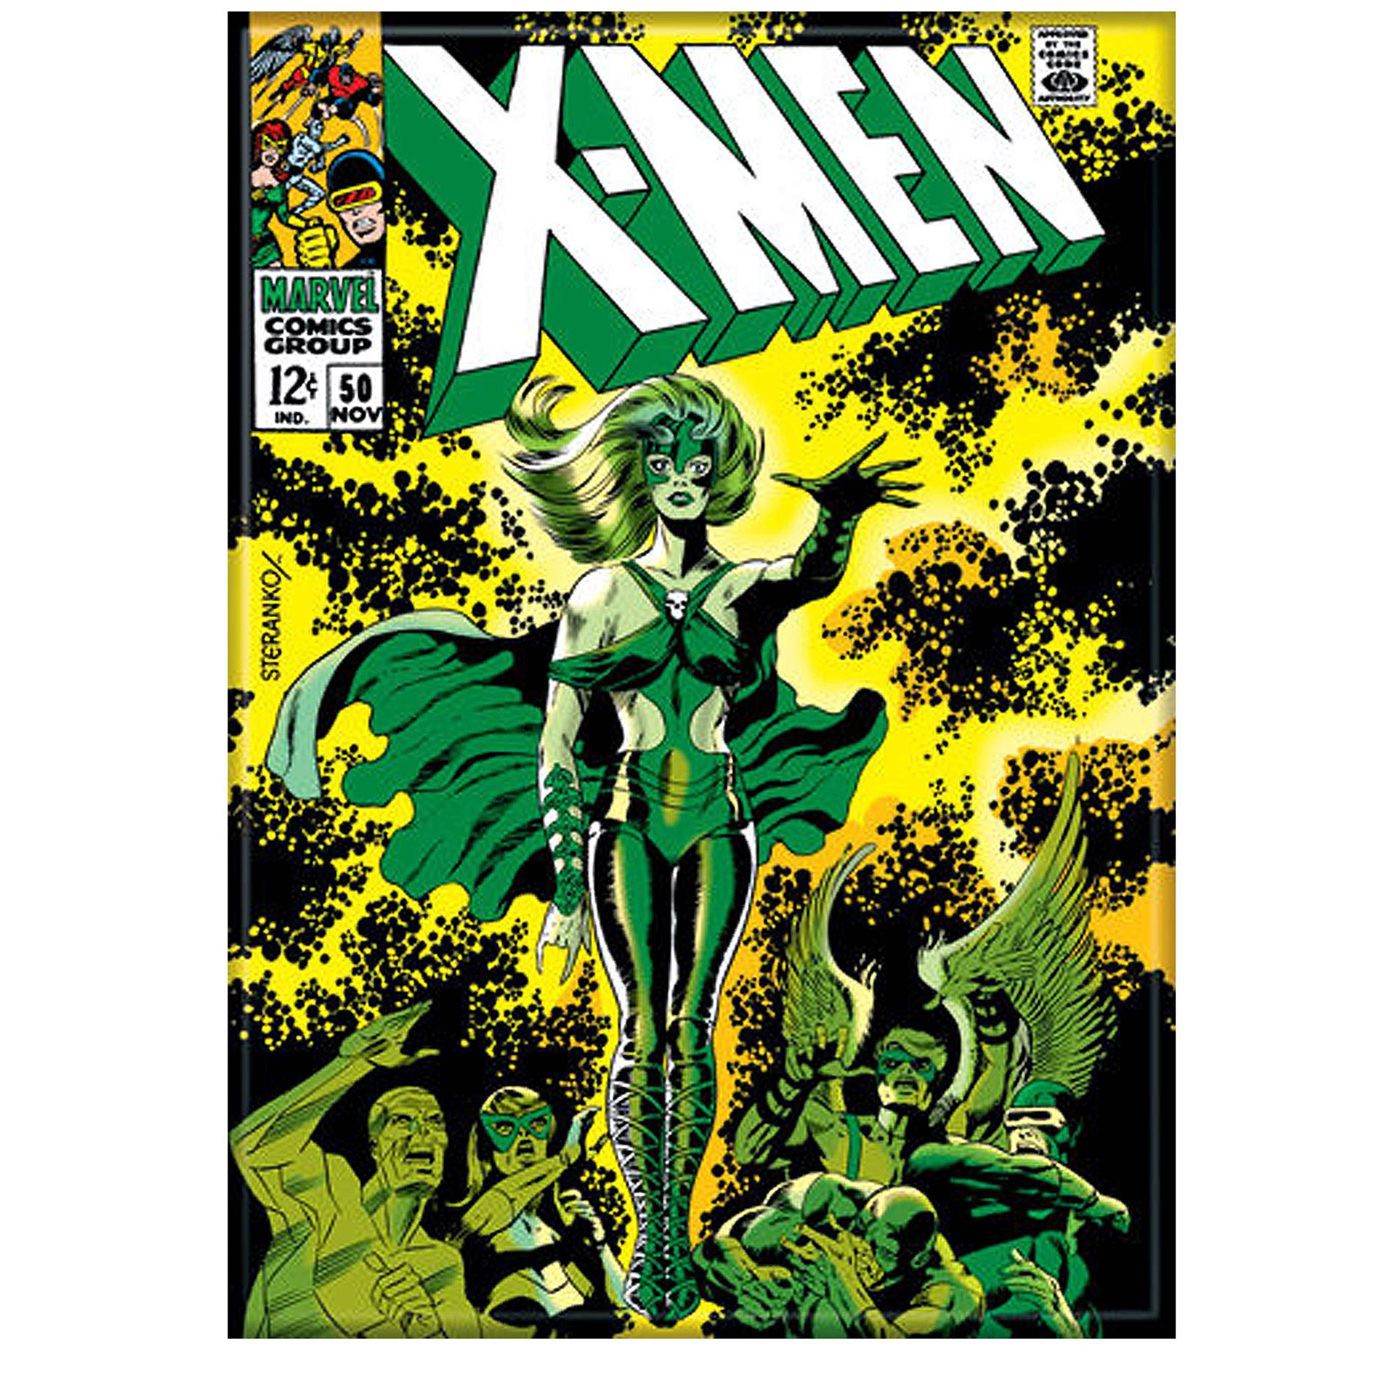 Uncanny X-Men #50 Cover Magnet